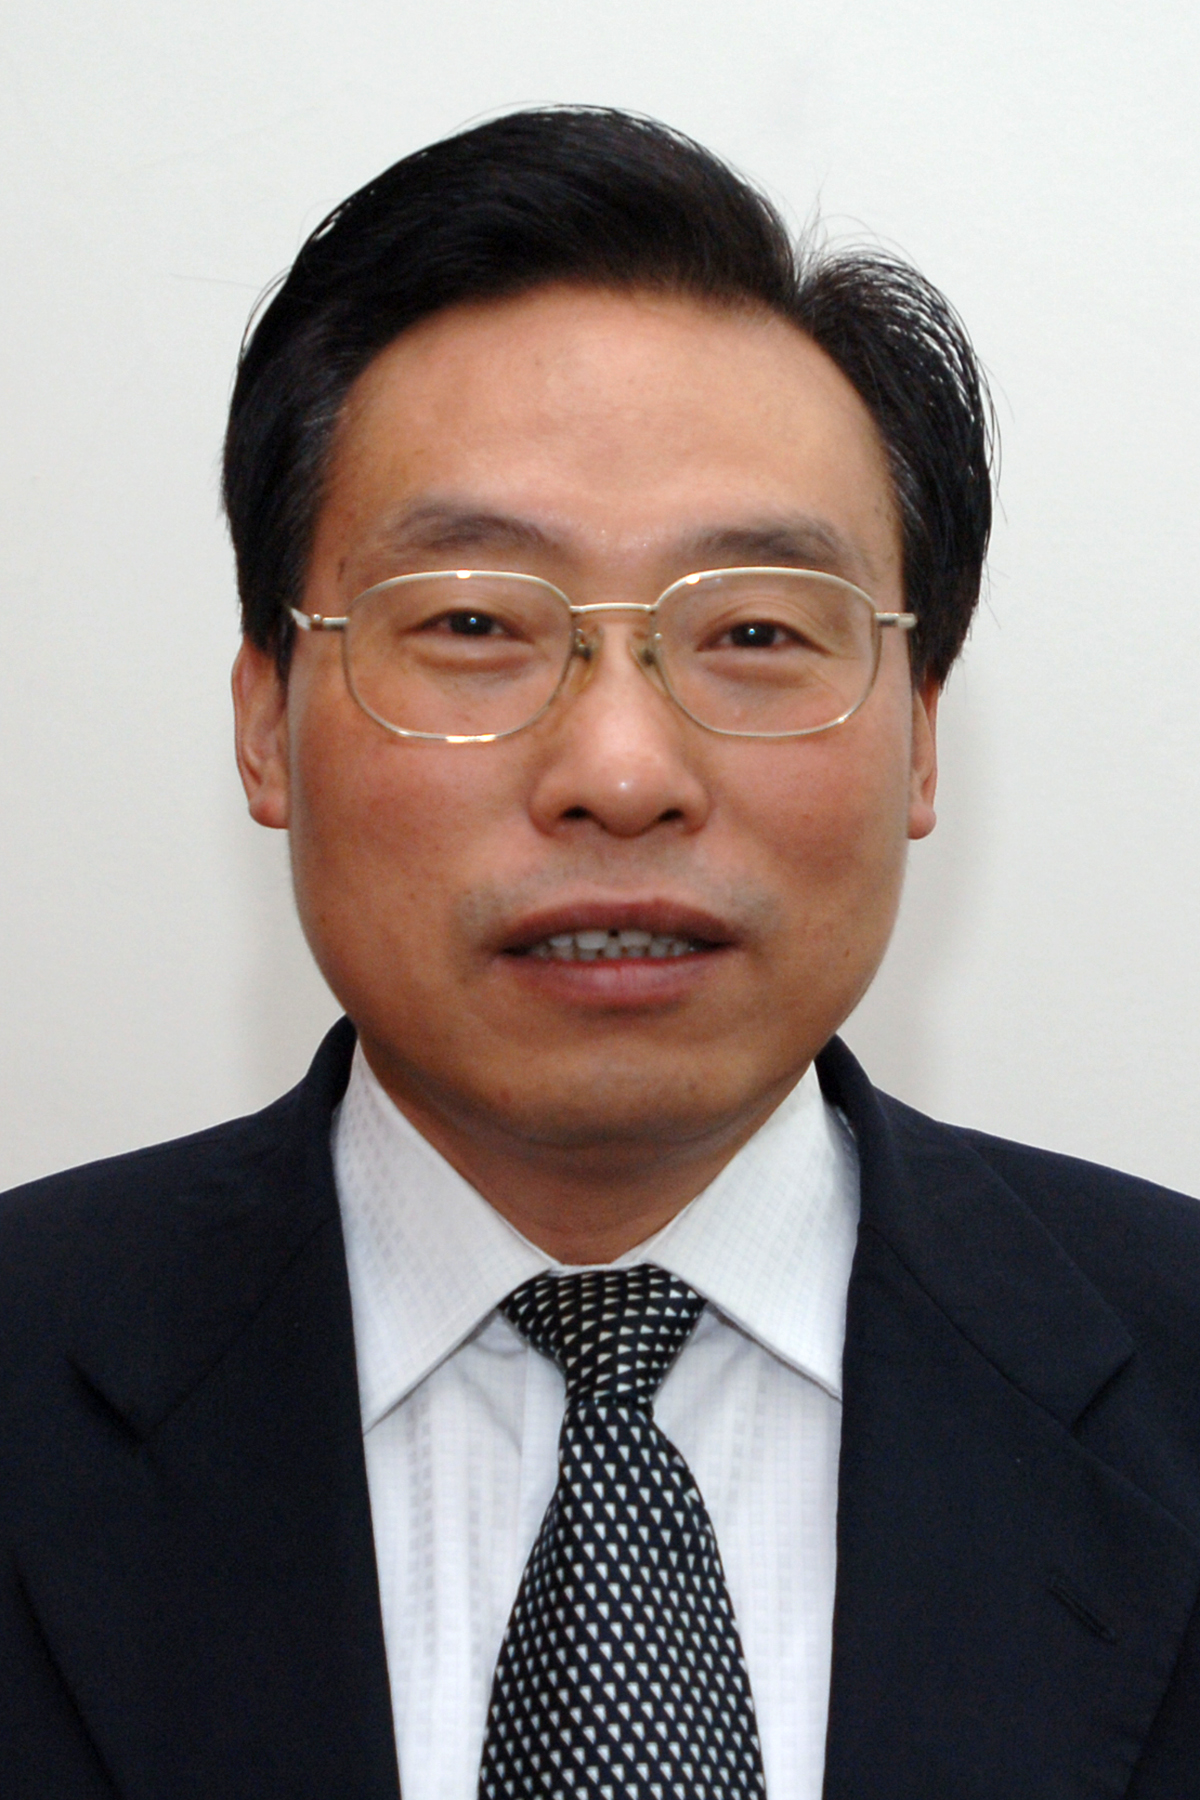 Zhang Qingjie